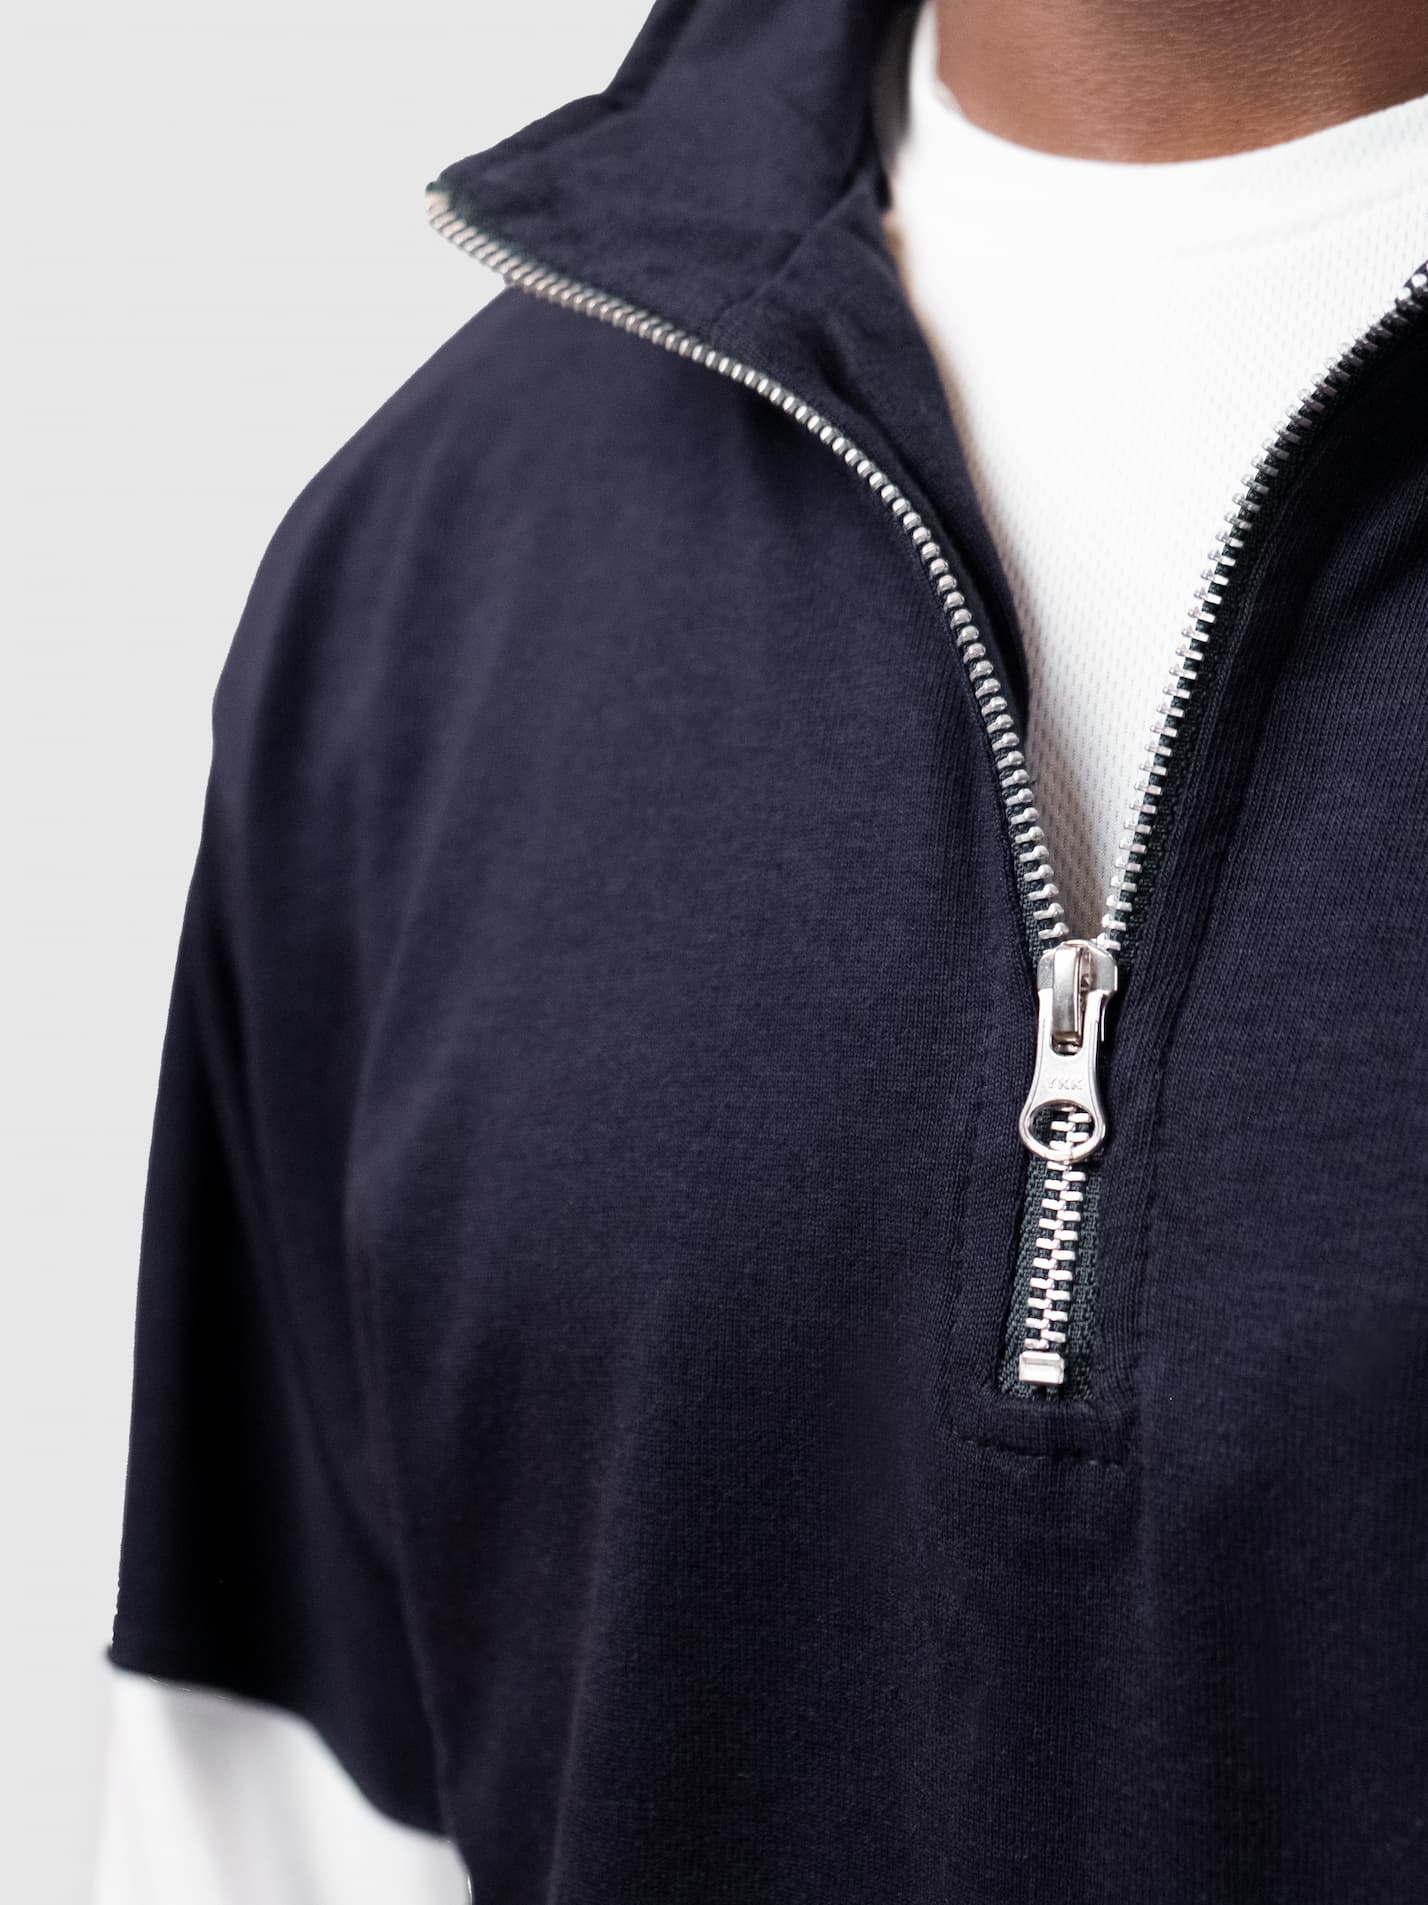 Somerville College Oxford JCR Traditional Crest Unisex Panelled 1/4 Zip Sweatshirt